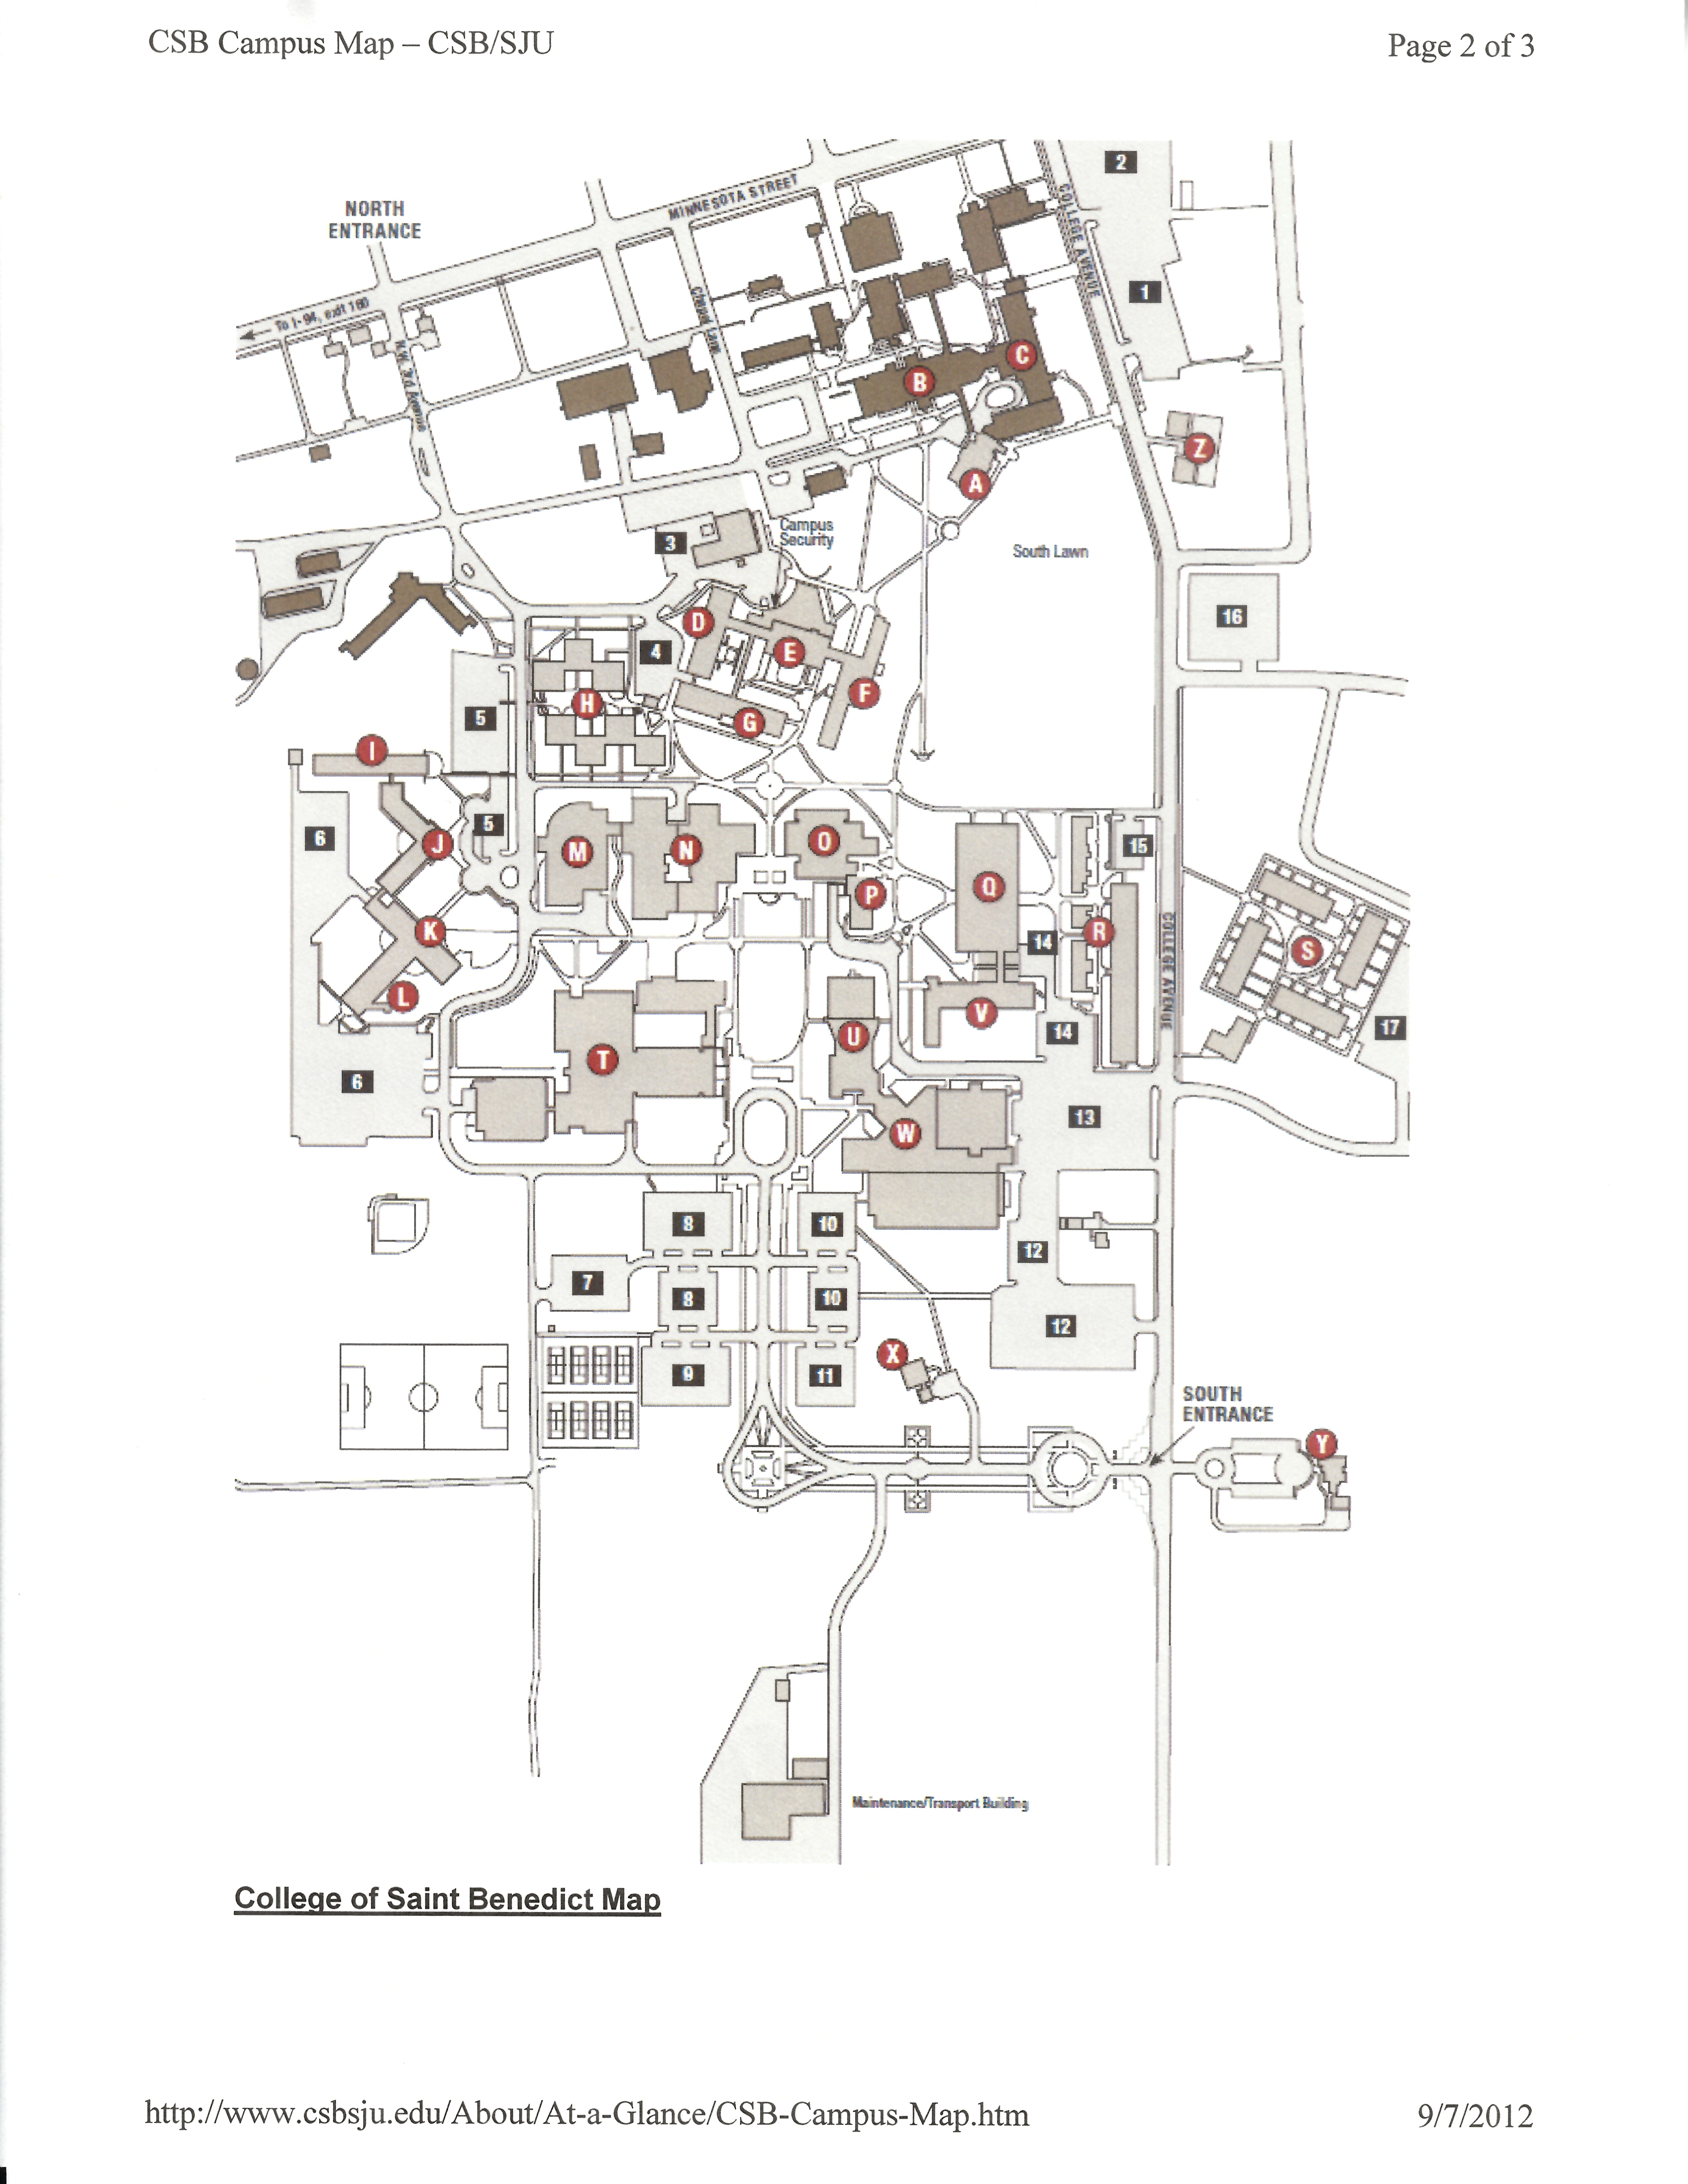 CSB campus map 2009